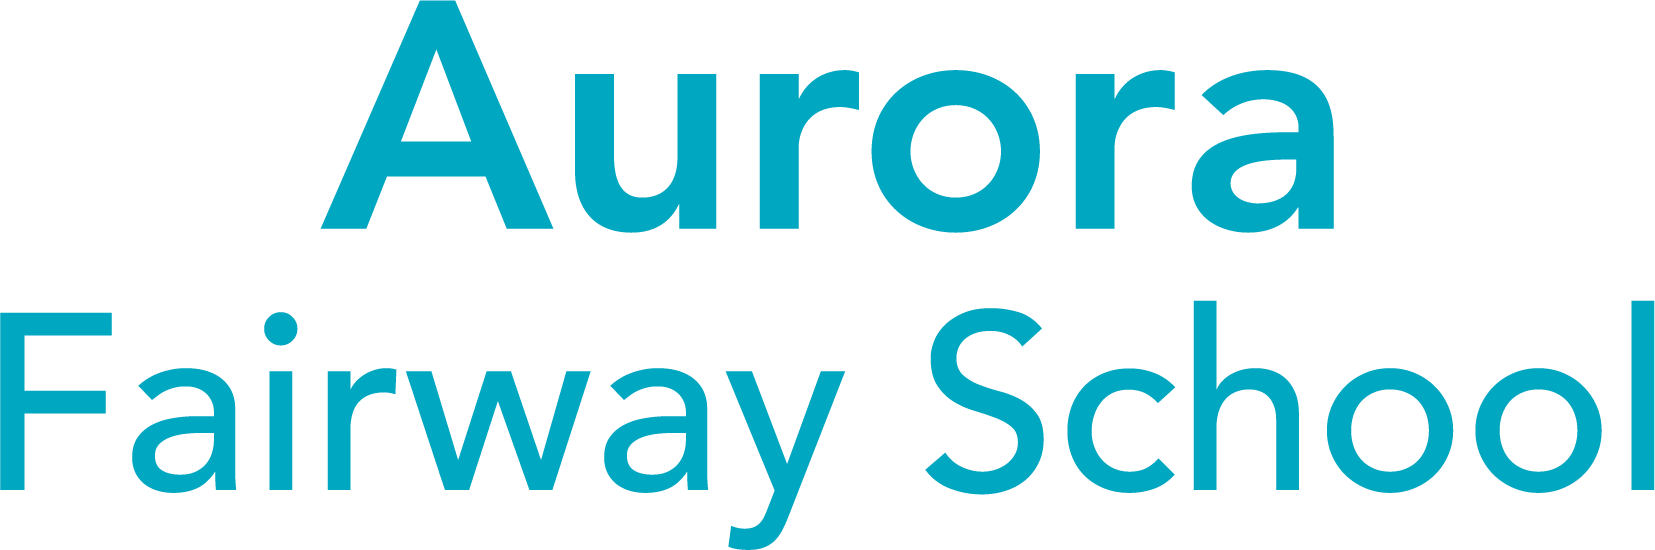 Aurora Fairway School